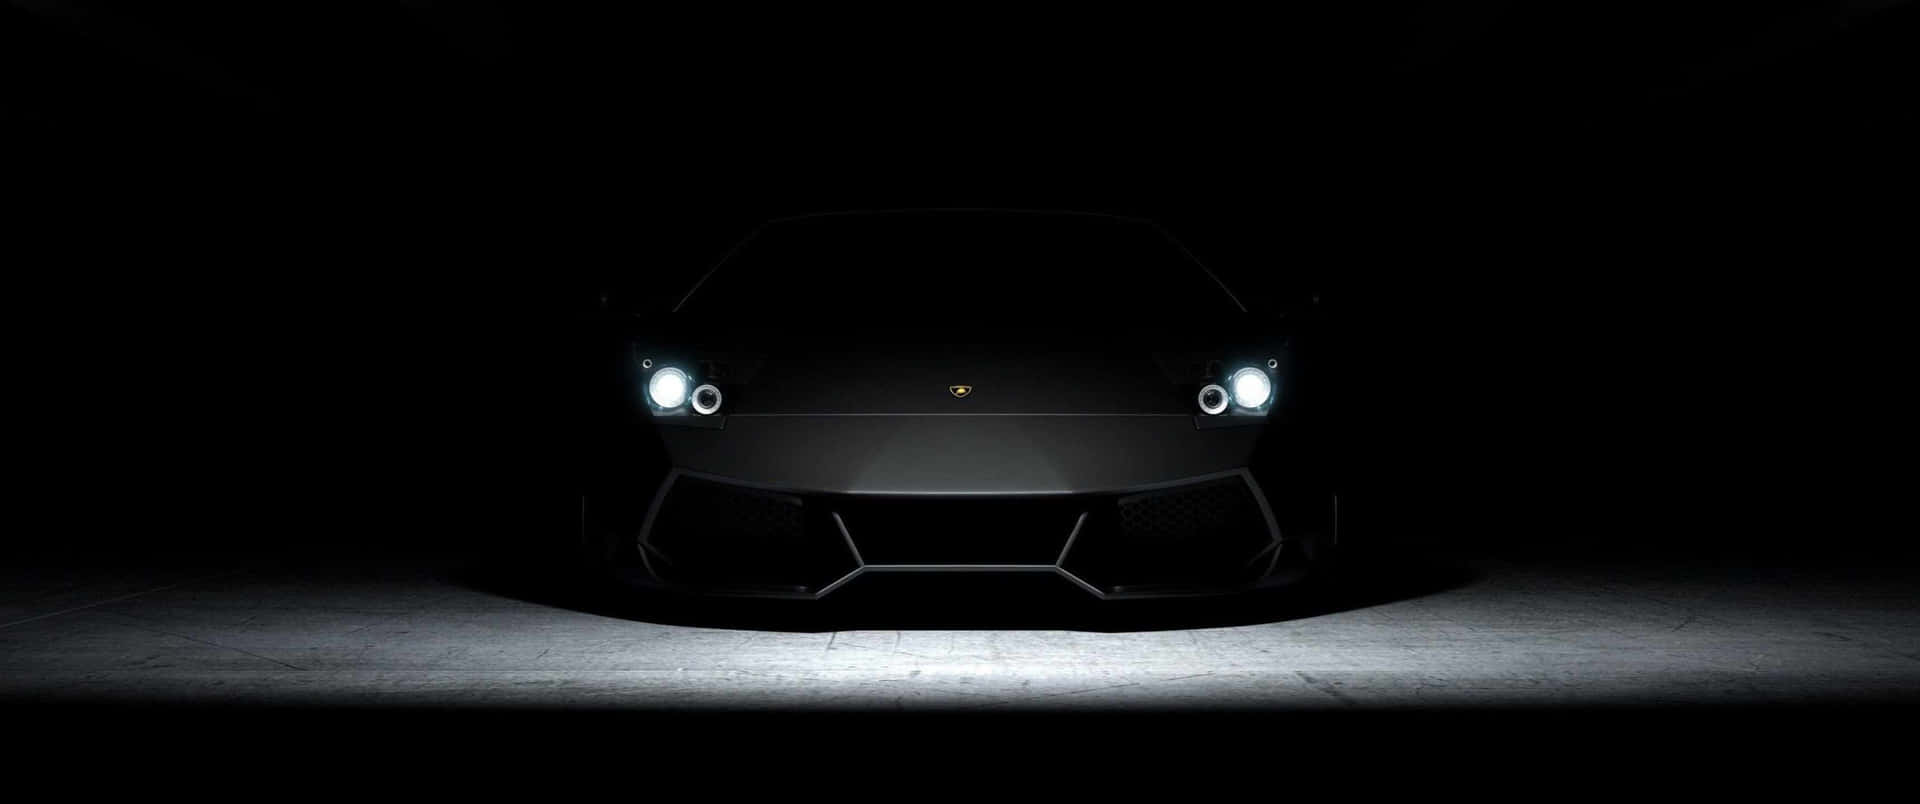 Lamborghinimotorsports - Velocidade E Estilo Em Um.